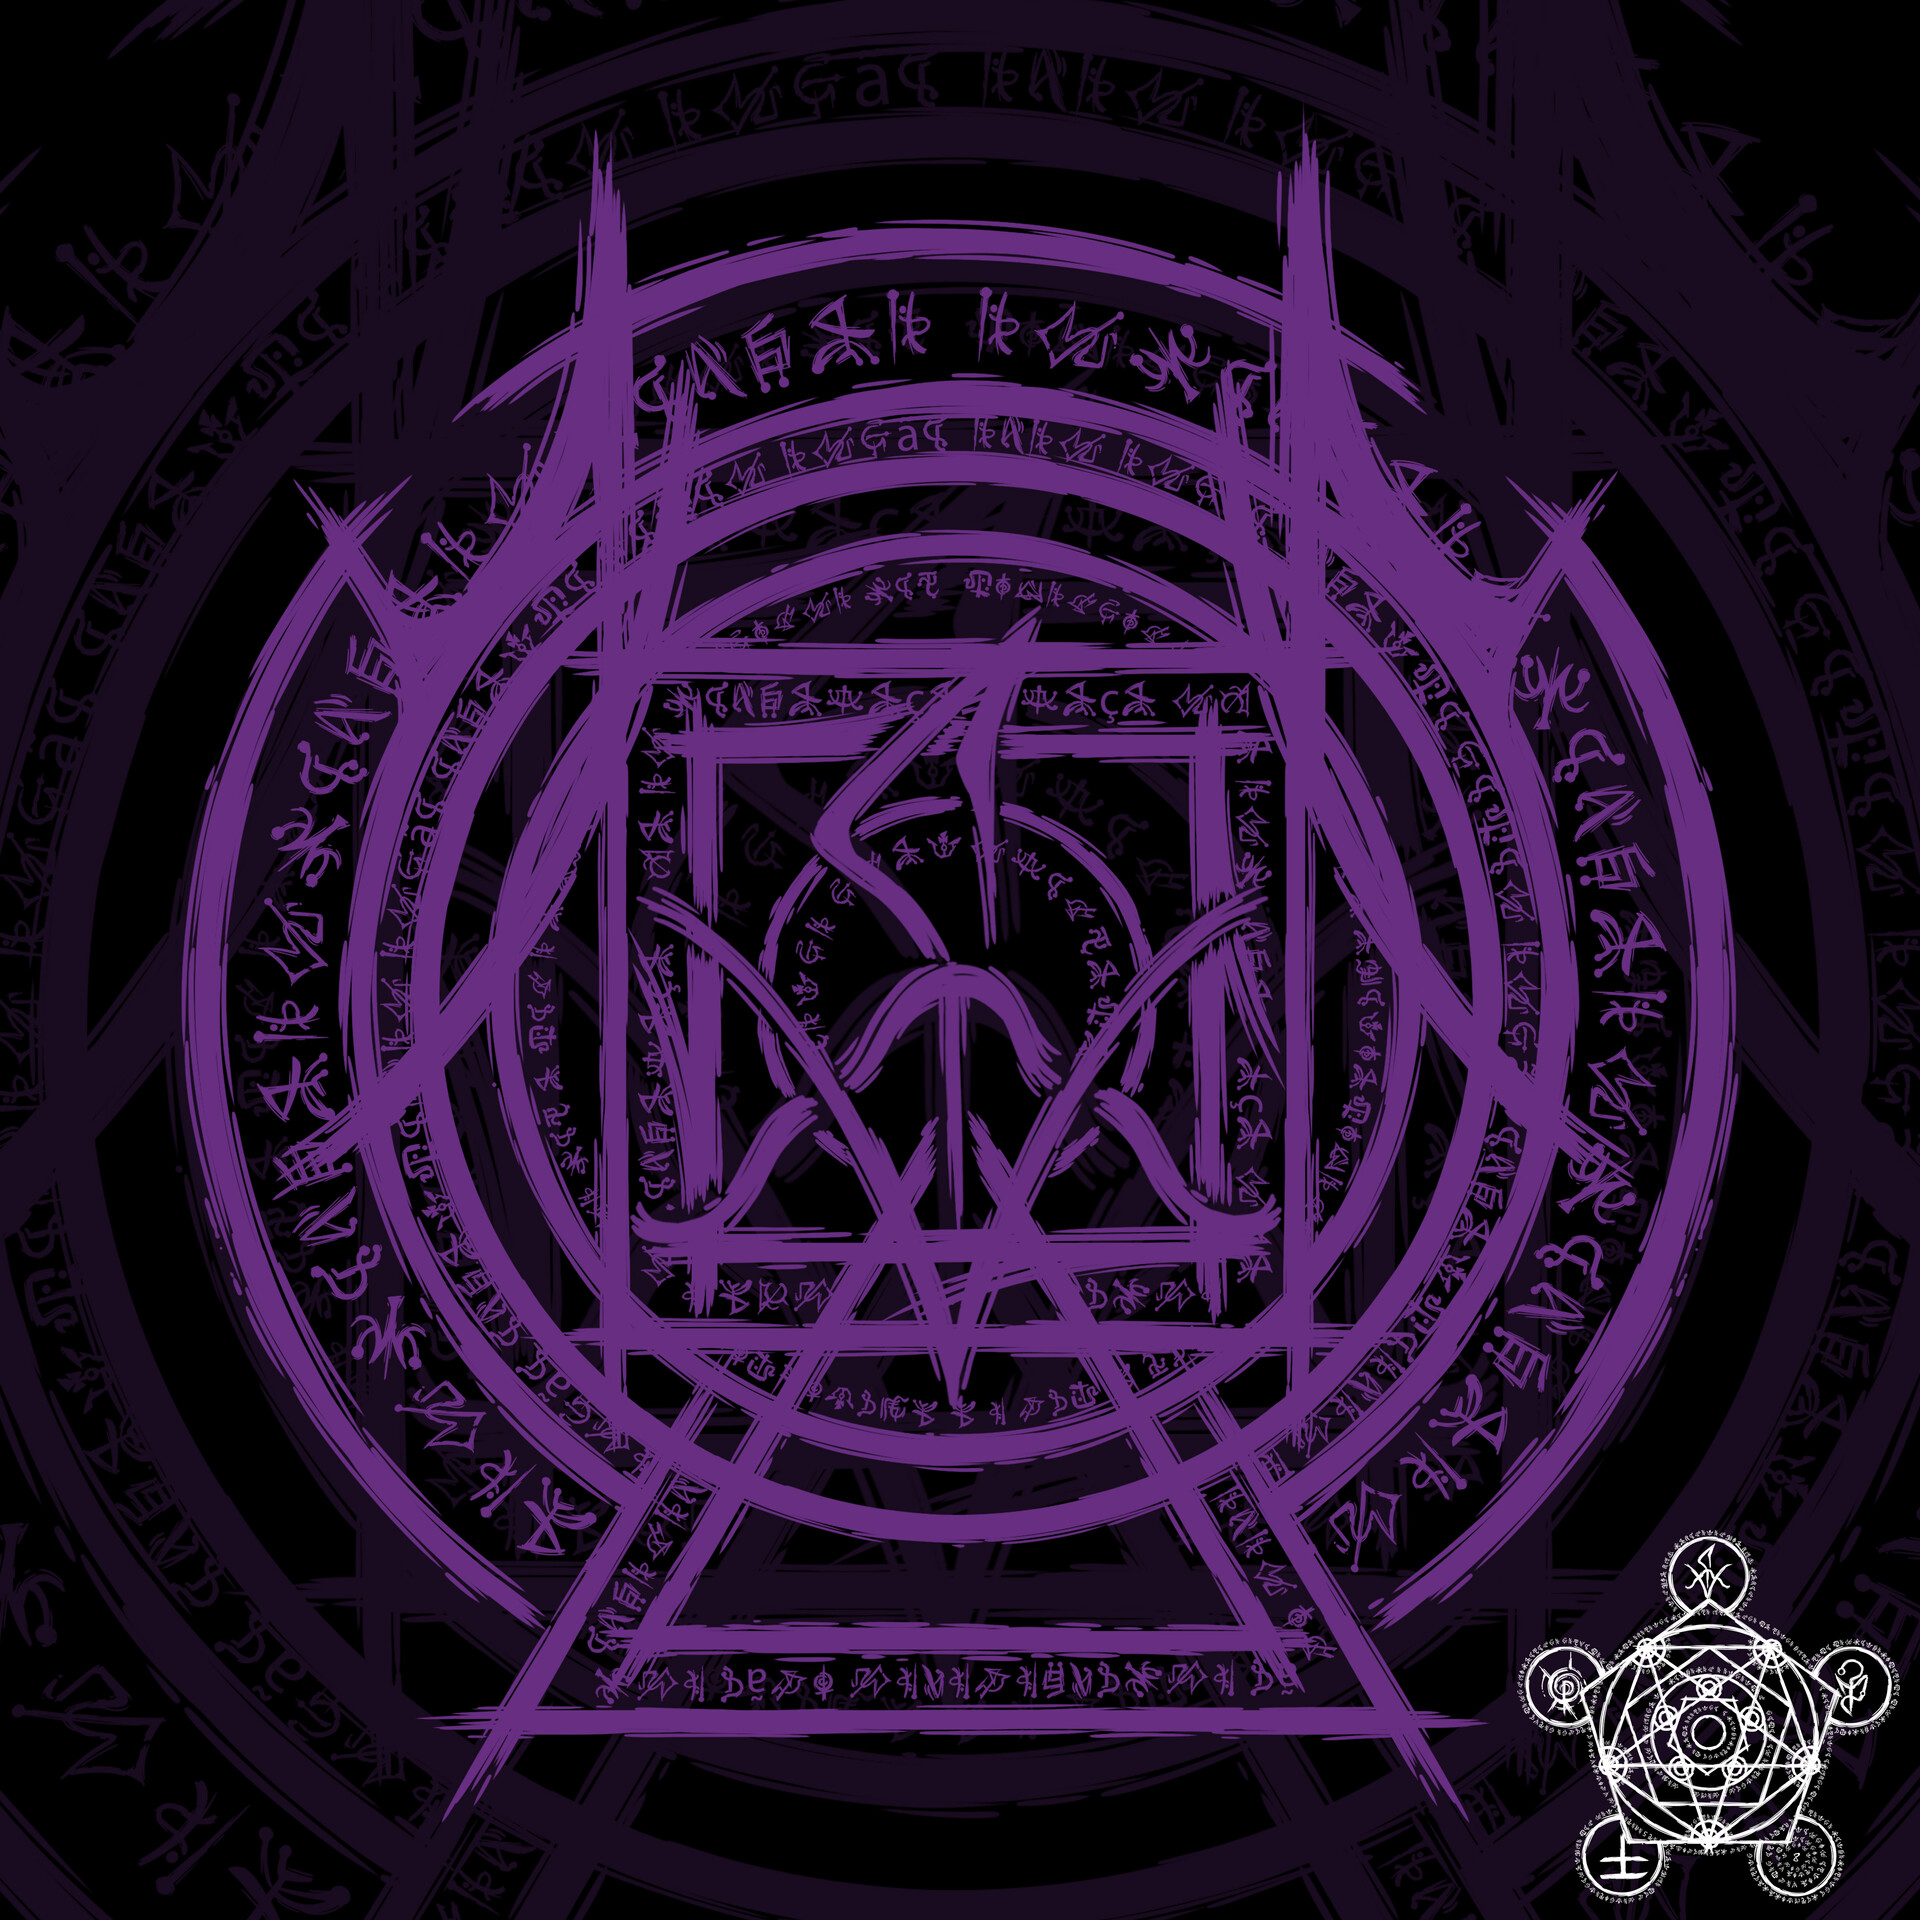 Ordem Paranormal RPG - Leliel, O Anjo da Sombra